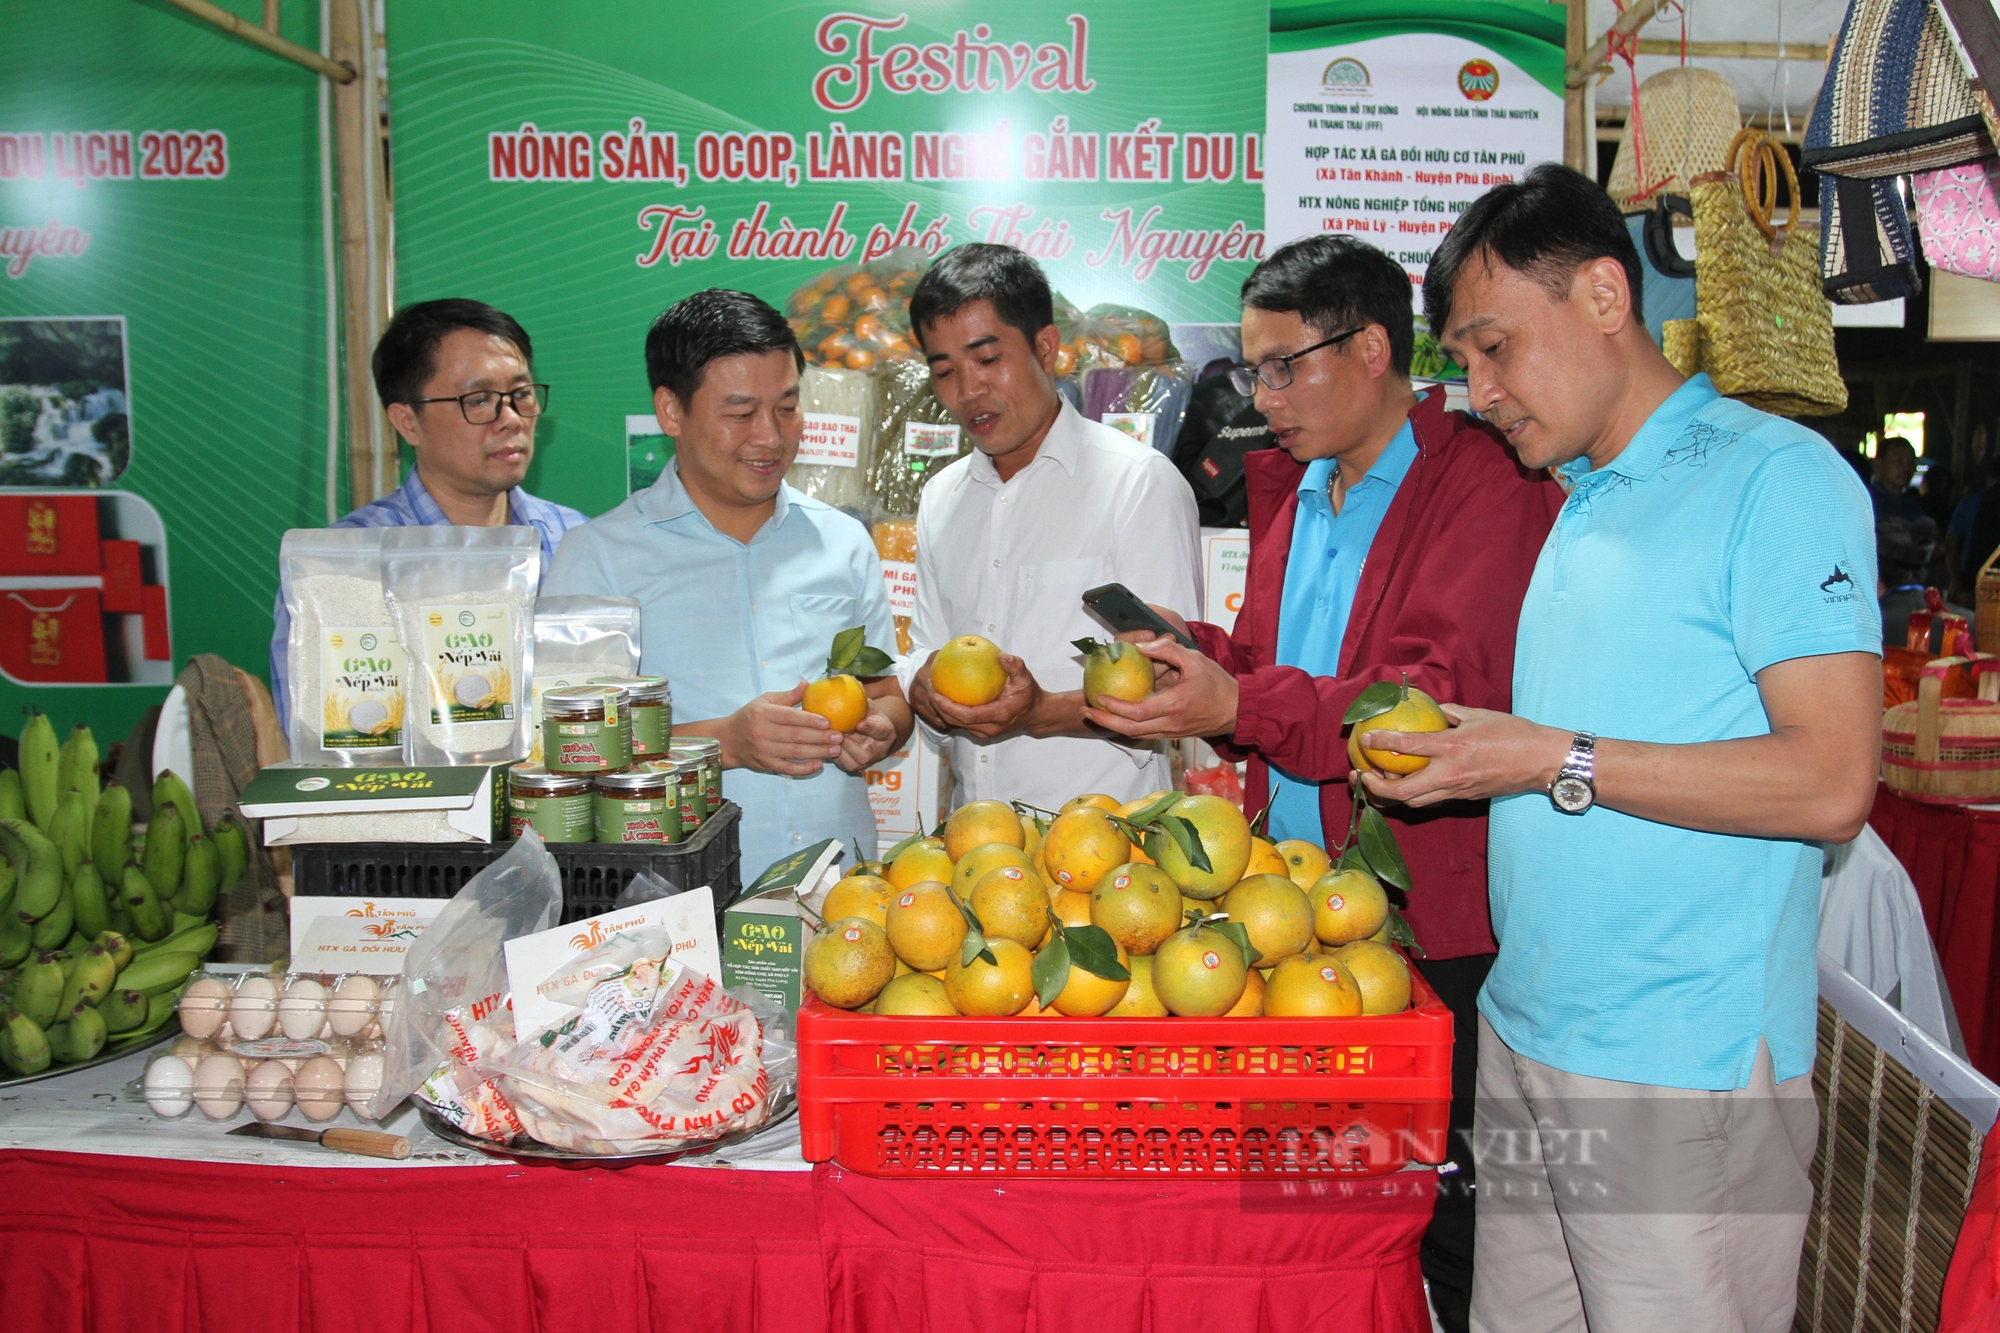 Festival Nông sản, OCOP, làng nghề gắn kết du lịch - Thái Nguyên 2023: Quy tụ đặc sản vùng miền - Ảnh 4.